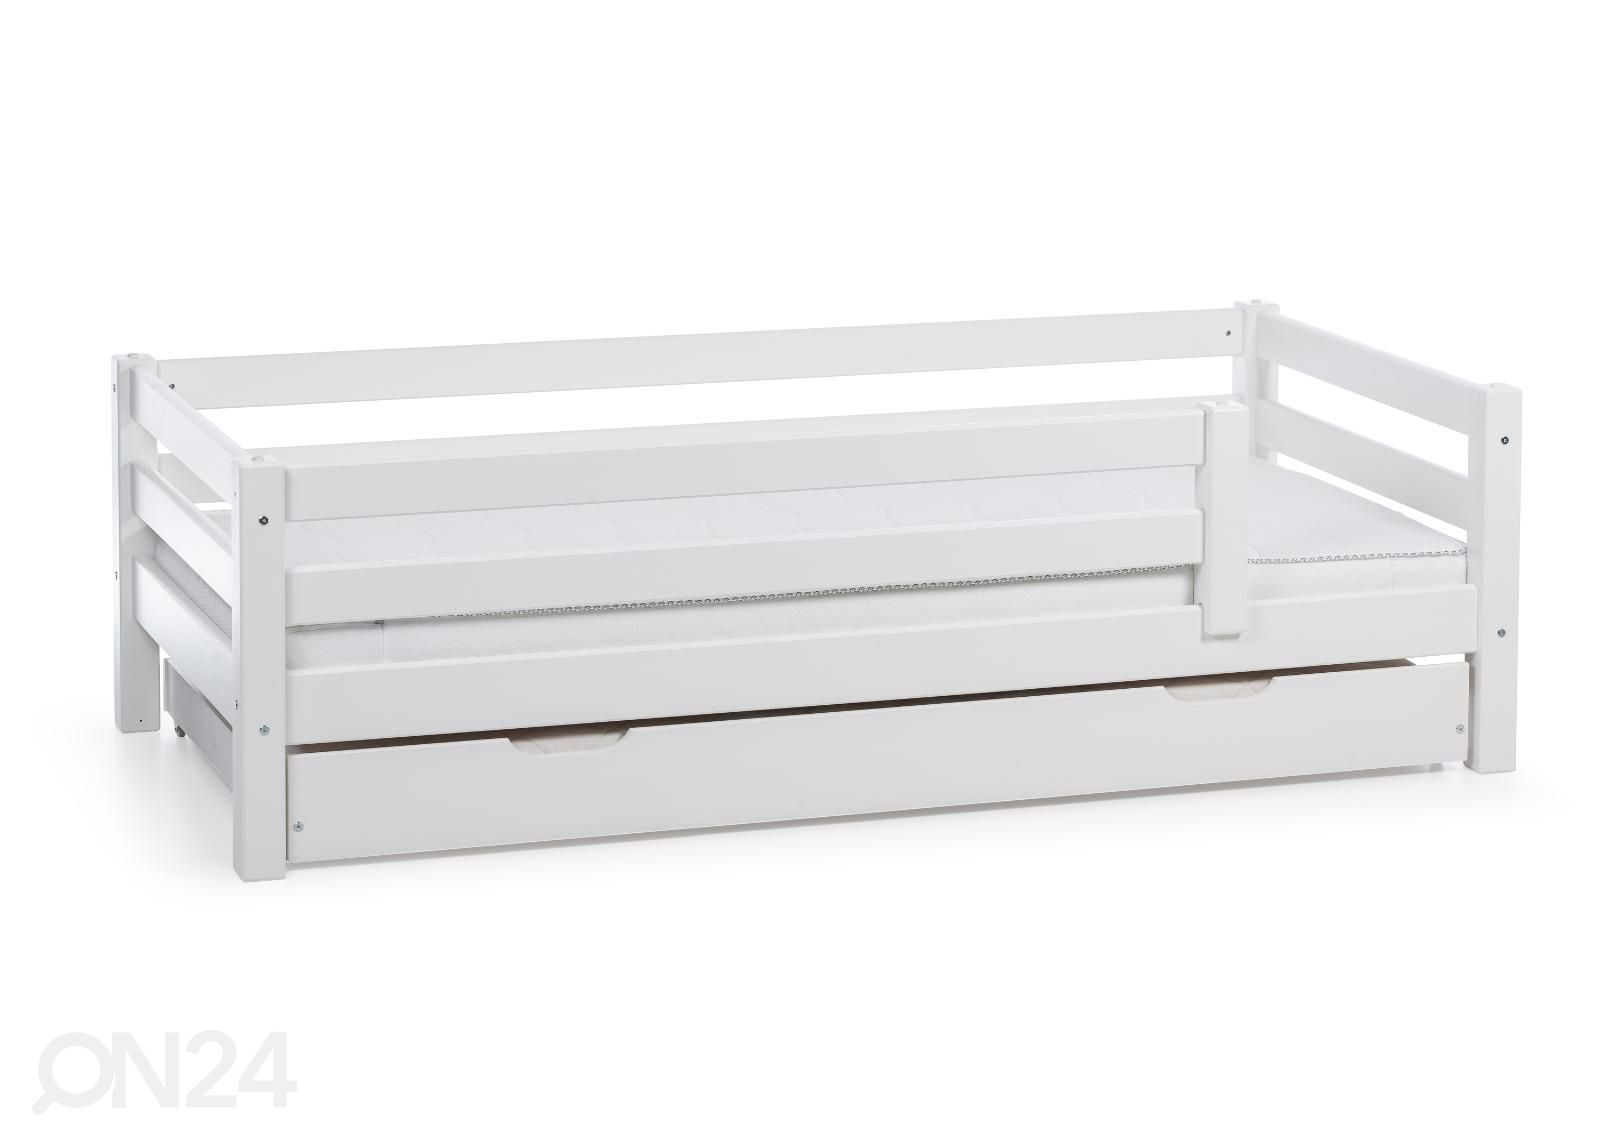 Suwem кровать Fantazy 90x200 cm, с перегородками и дополнительной кроватью увеличить